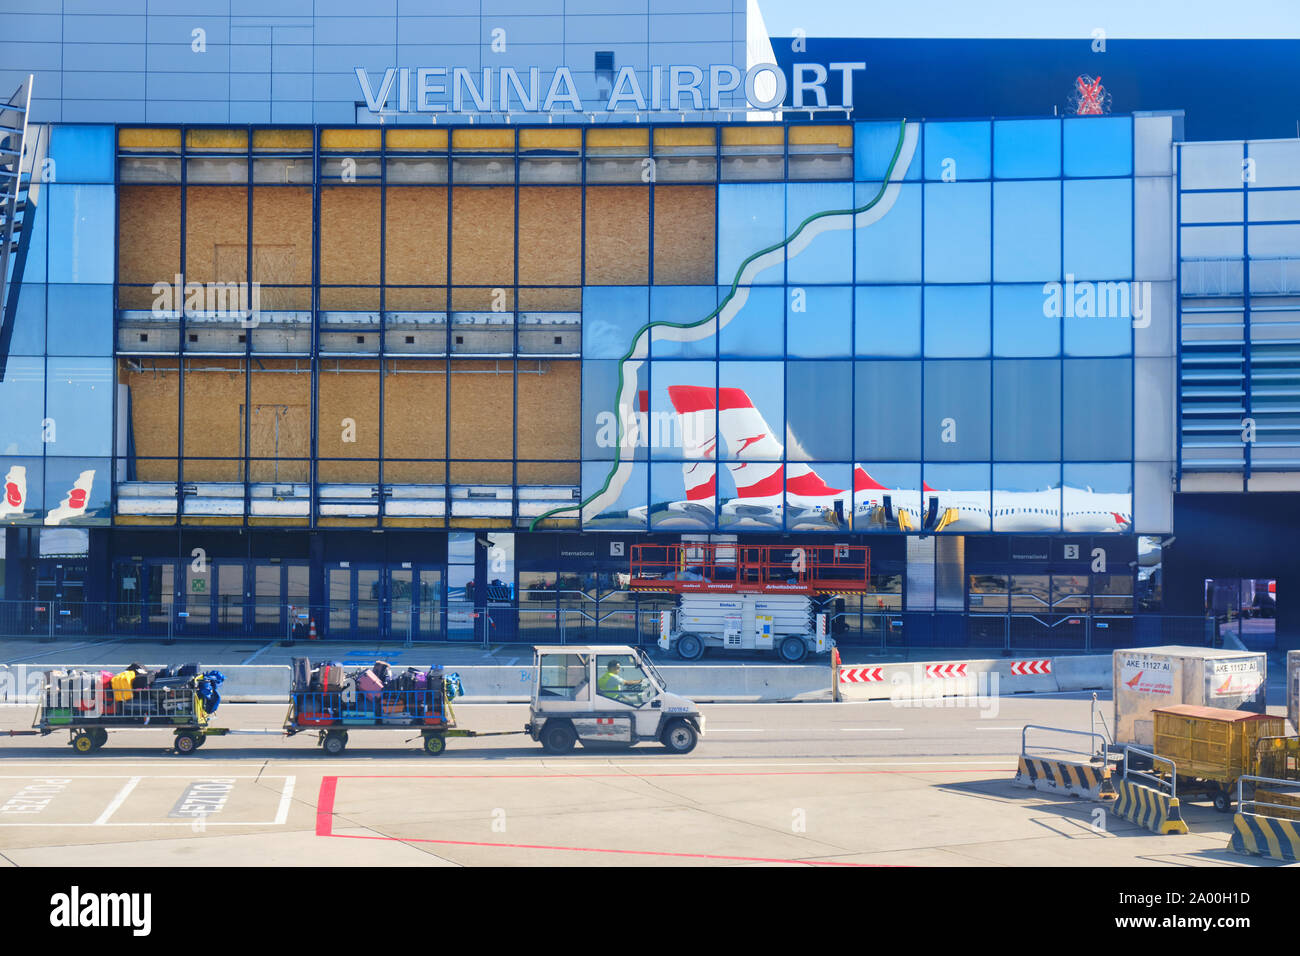 Schwechat, Austria - 15 Settembre 2019: l'Aeroporto Internazionale di Vienna / Flughafen Wien (VIE) - edificio principale con finestre di vetro, un'Austrian Airlines Foto Stock